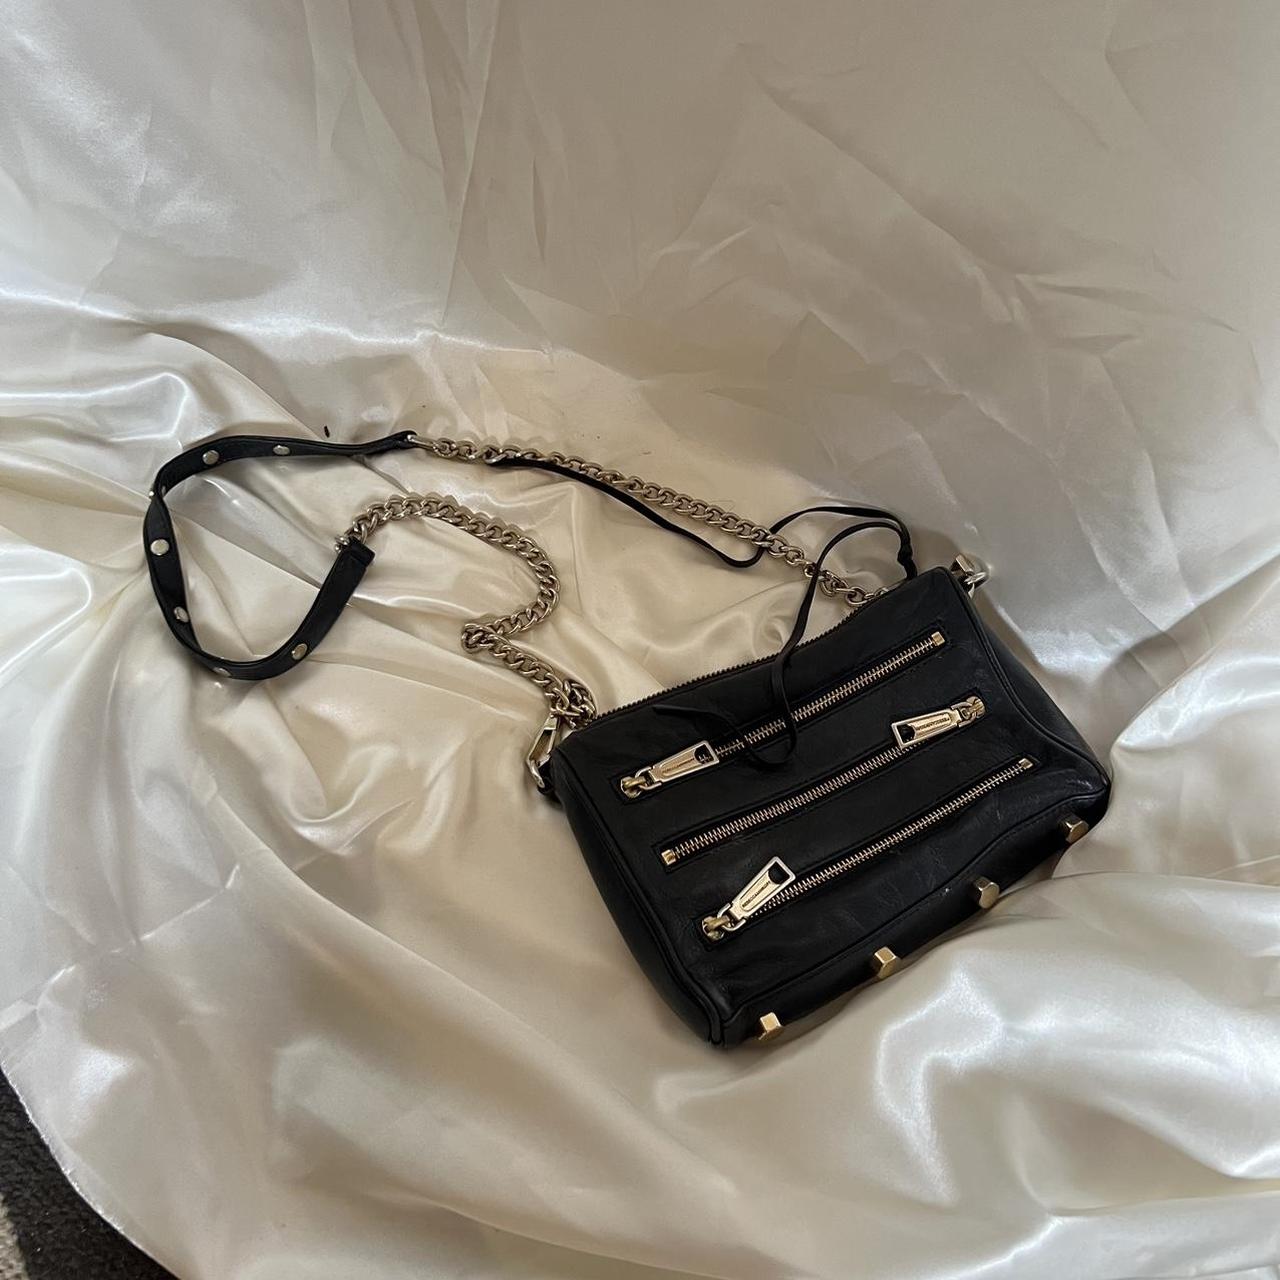 Rebecca minkoff zipper purse - Depop